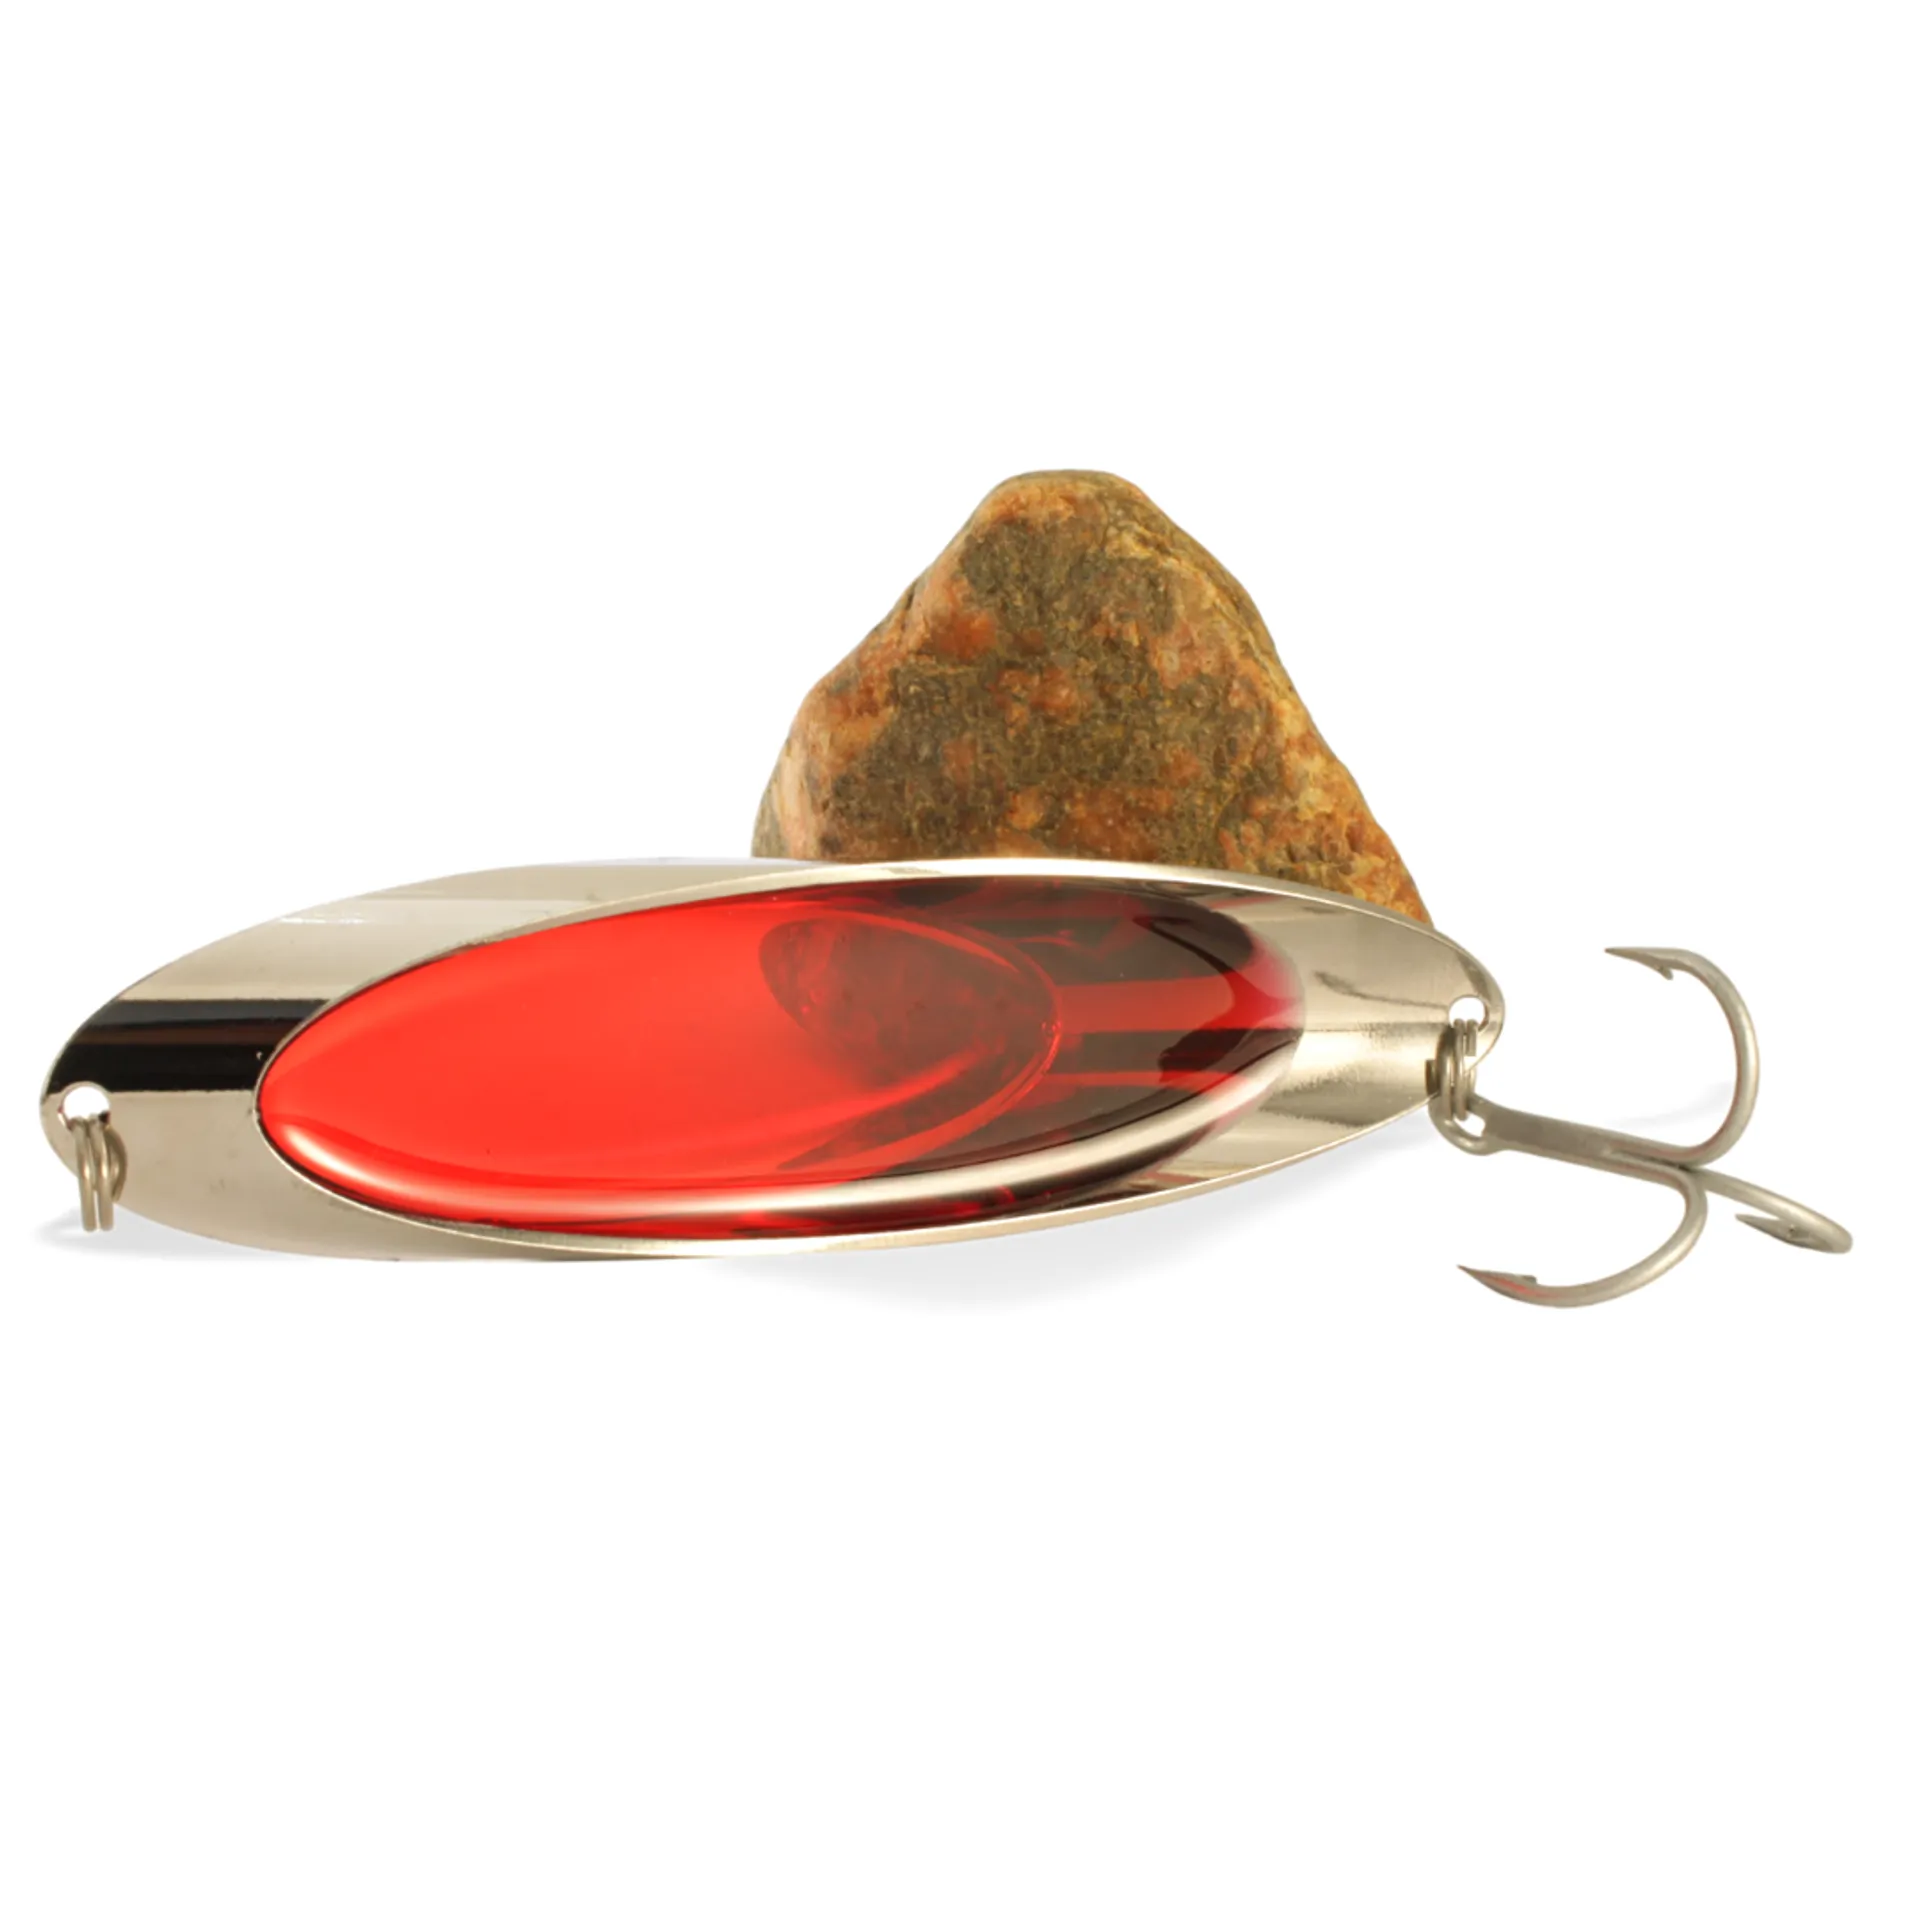 Norolan Light Spoon lusikkauistin 8 cm / 16 g Kulta/Punainen